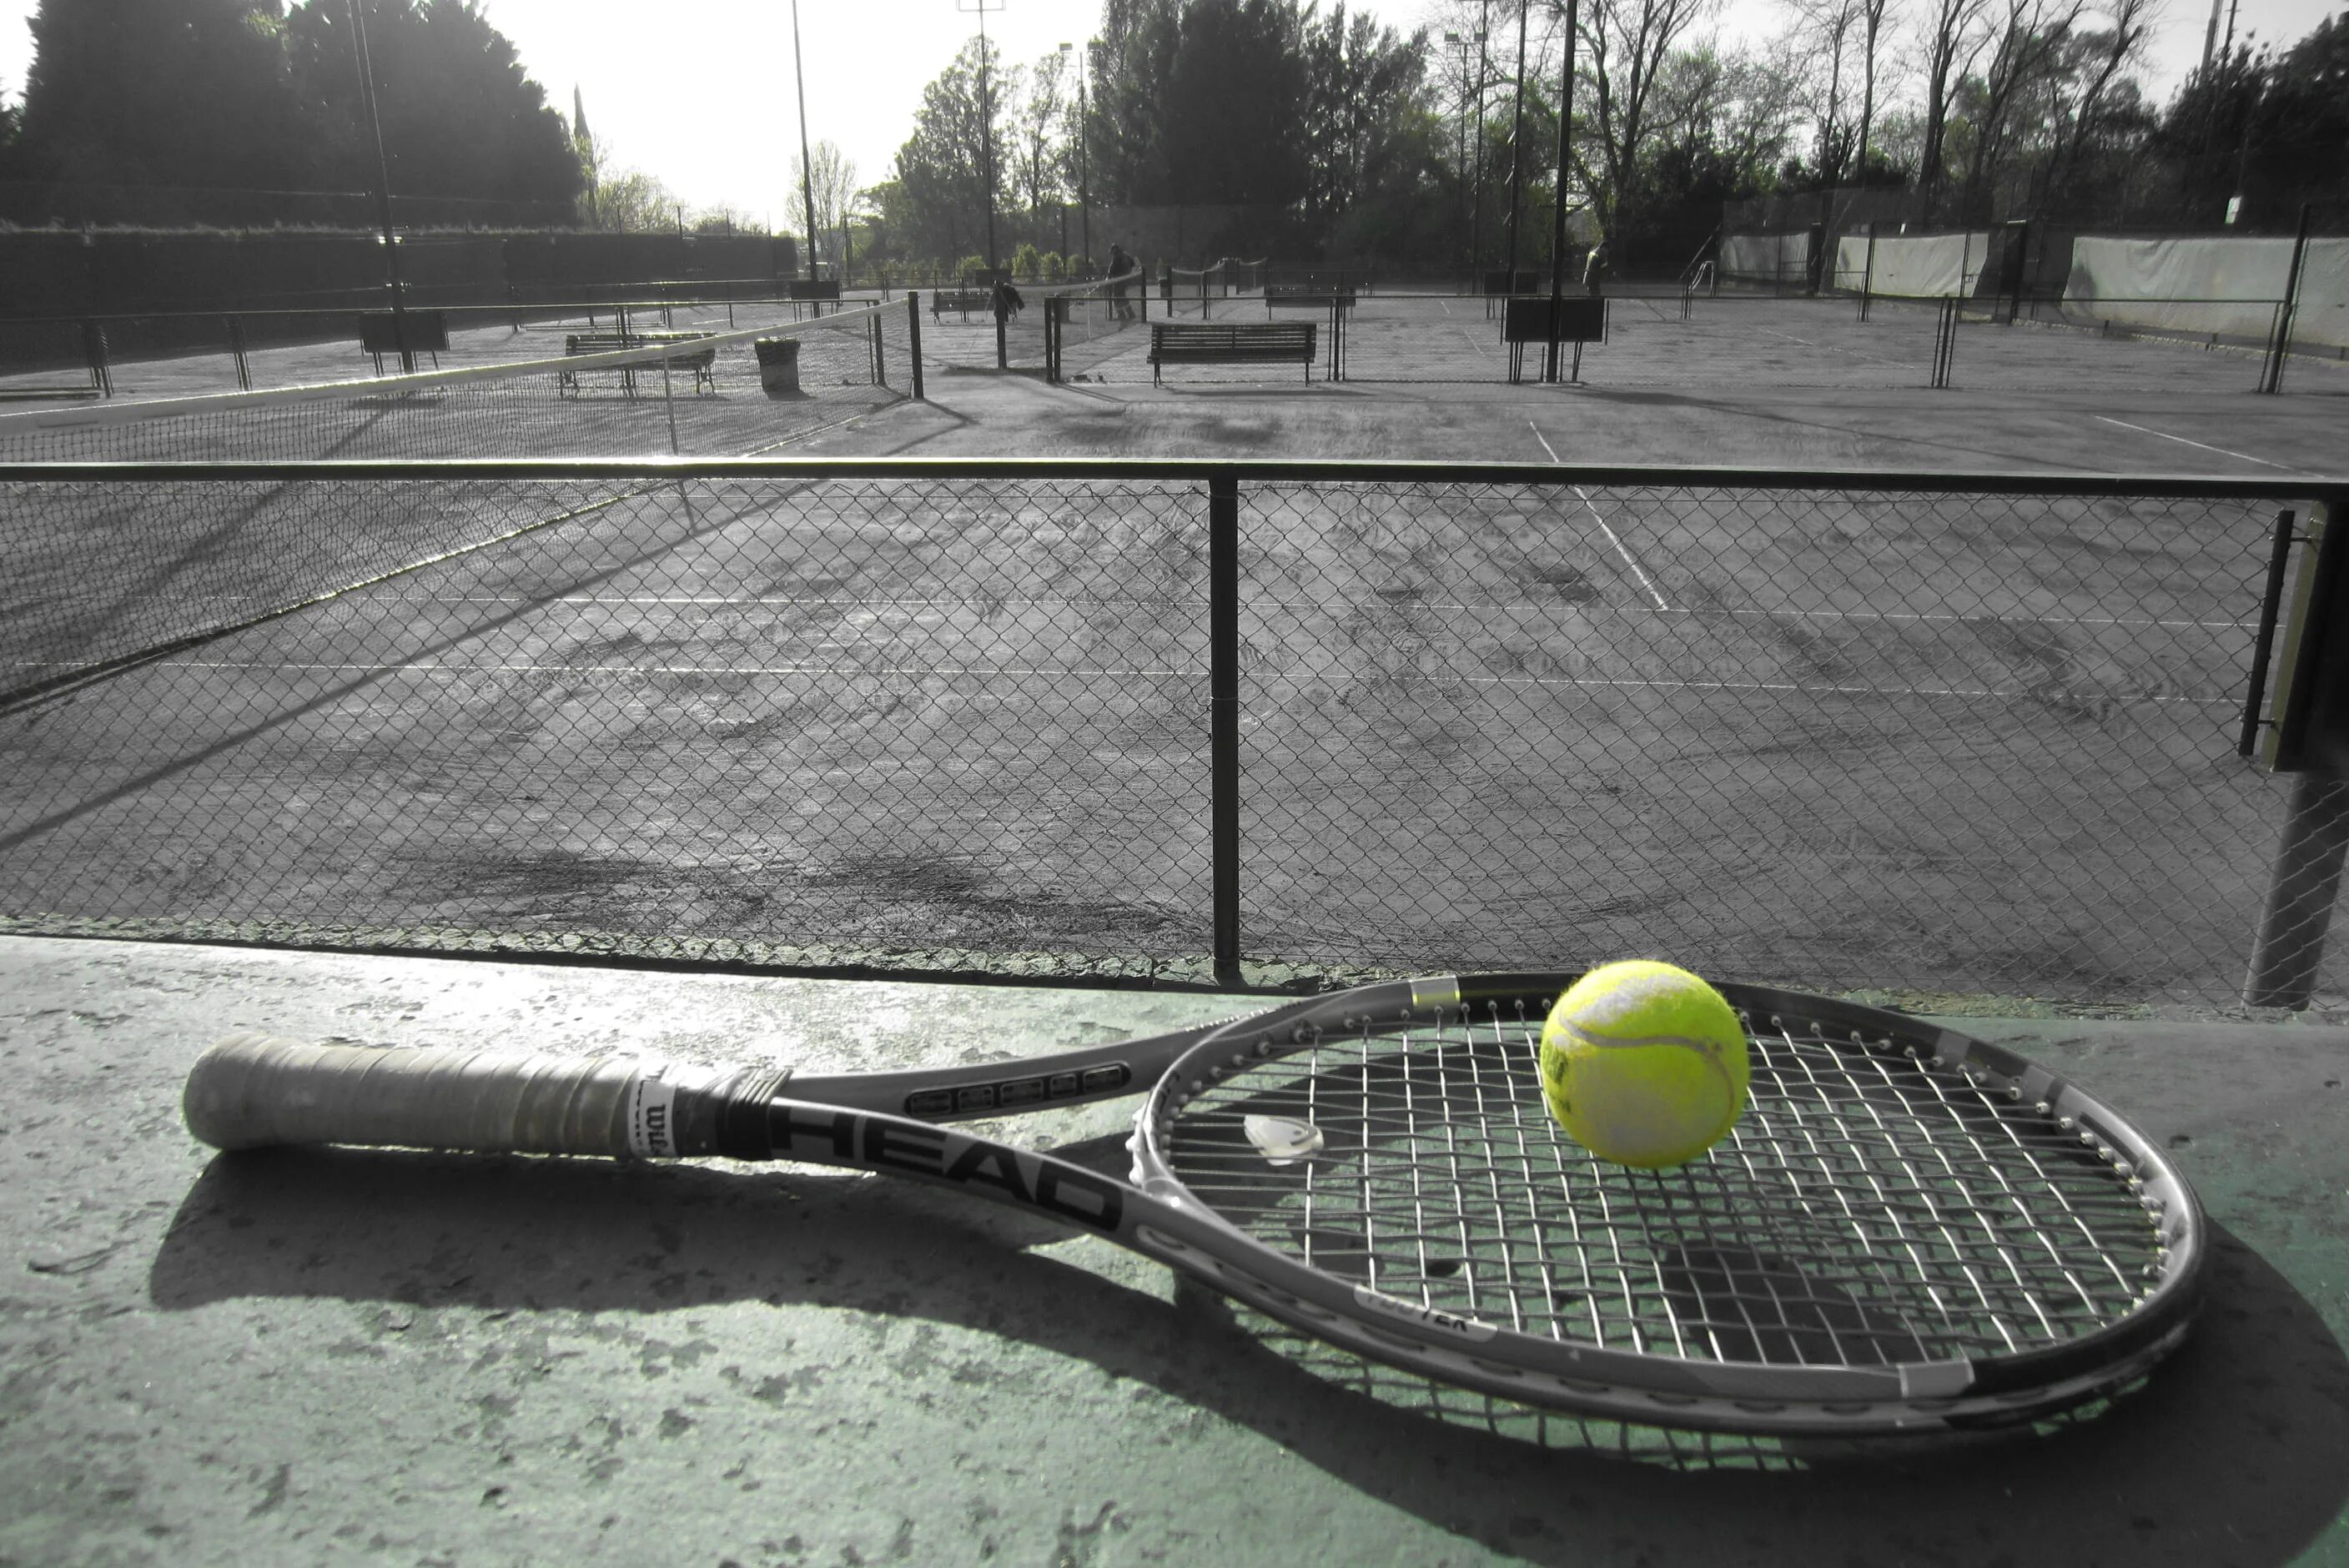 Теннис. Теннисный корт черный. Теннисный корт с мячом и ракеткой. Теннисный мяч на корте. Теннис игра с ракетками